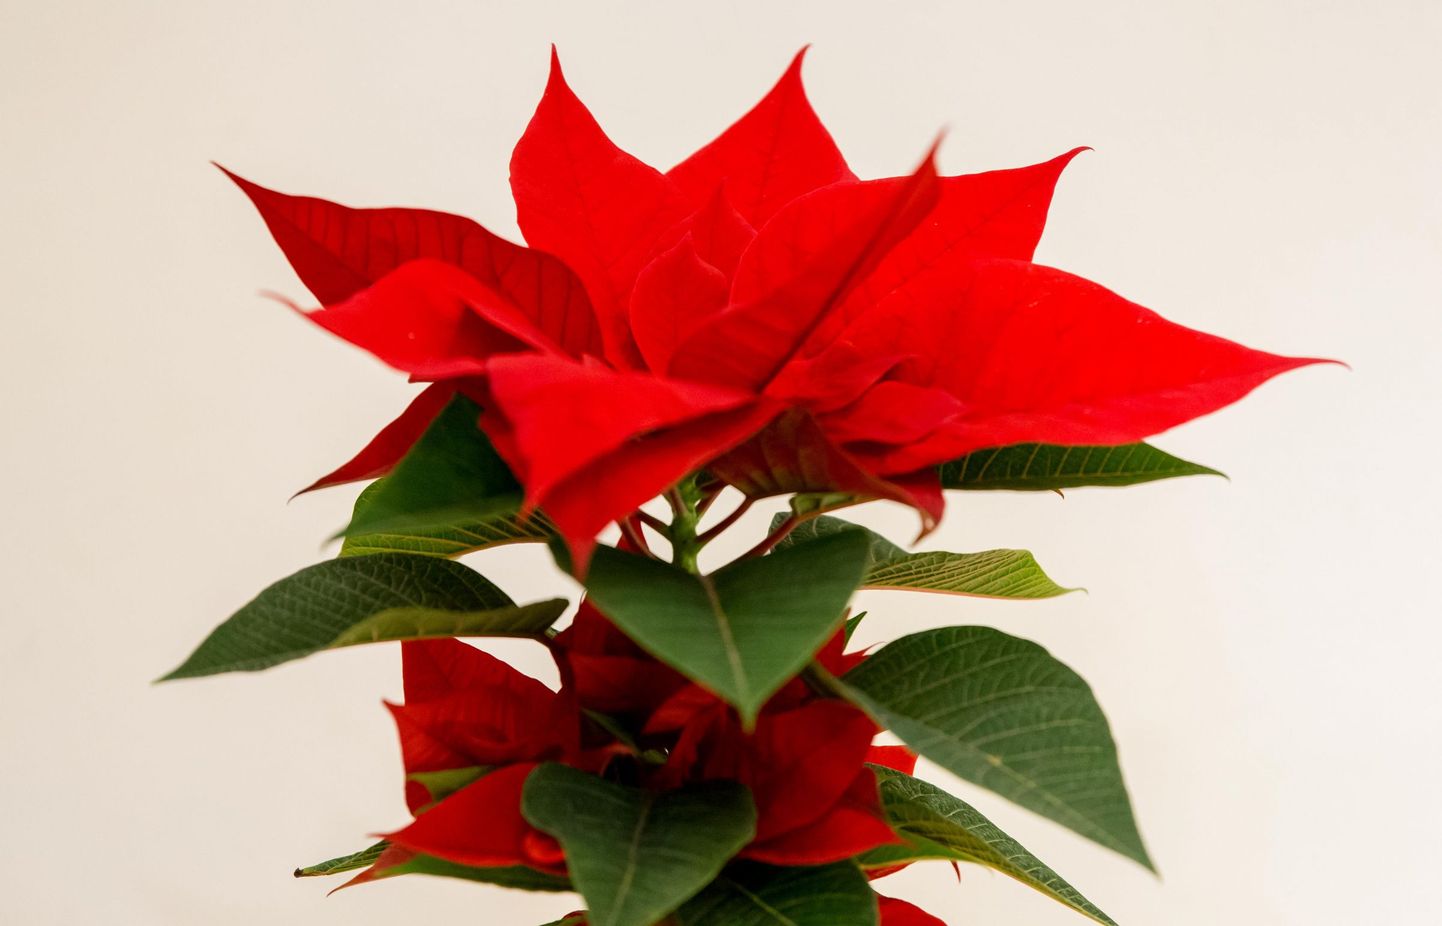 Looduses kasvab vaid punaste lehtedega jõulutähti, aga aretatud on ka roosades, lillades, valgetes ja kollakates toonides sorte, samuti kirjusid.